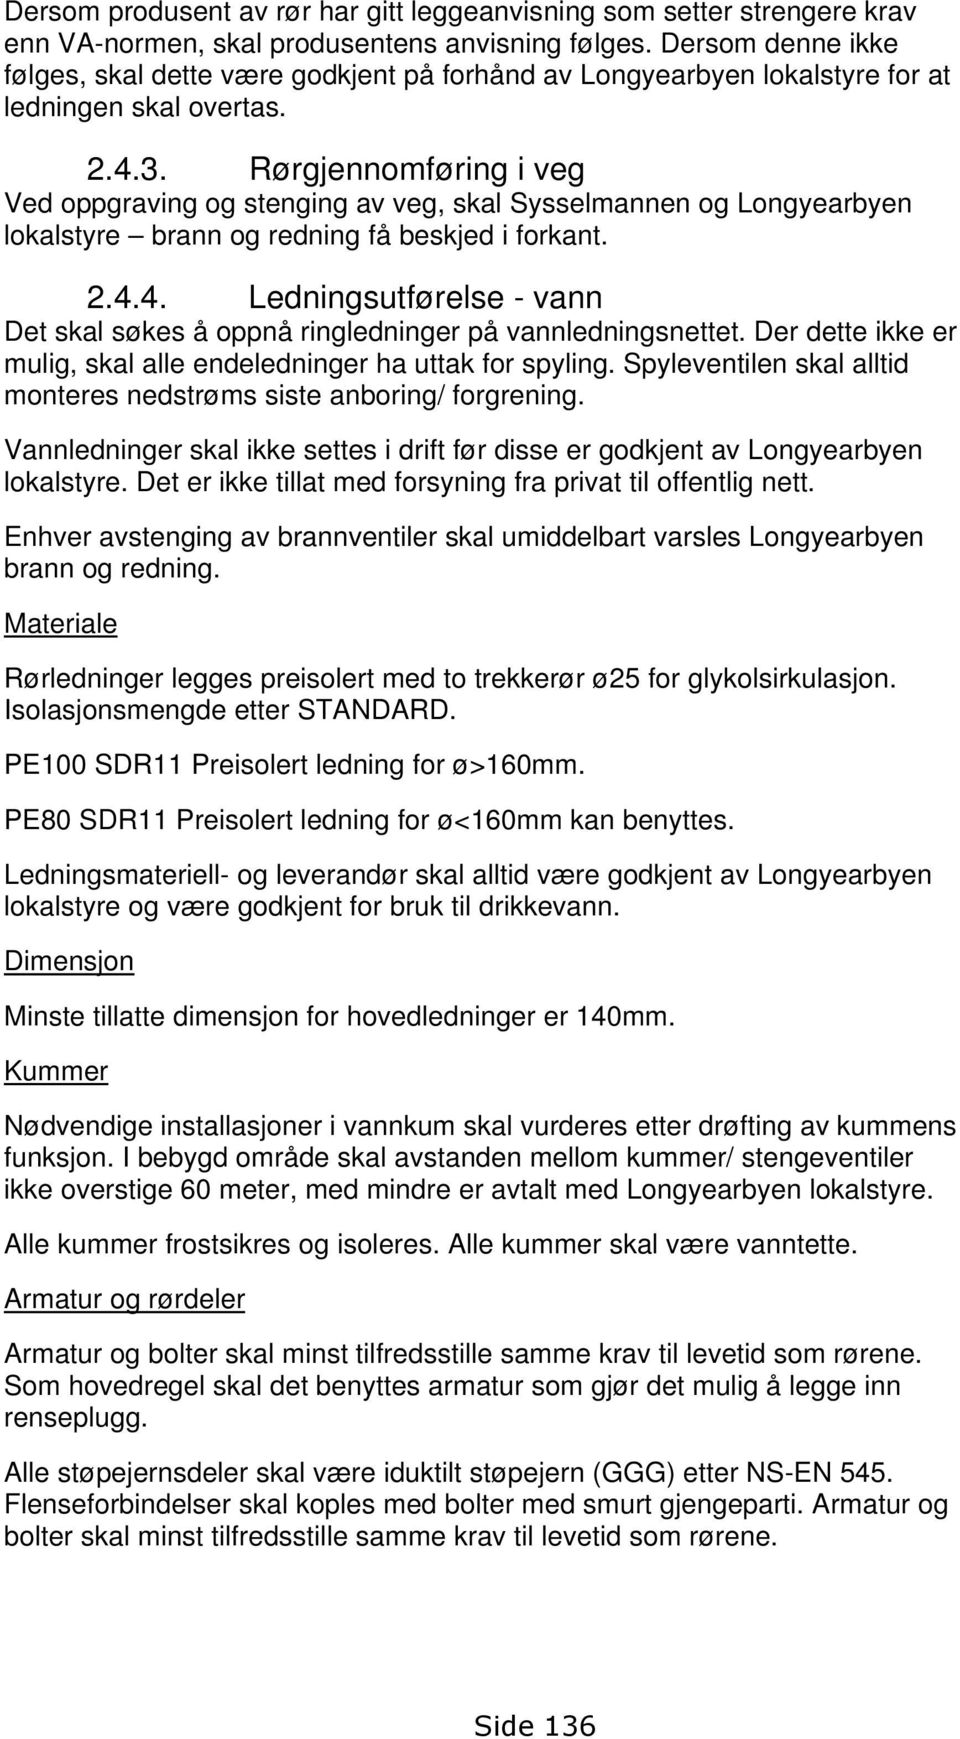 Rørgjennomføring i veg Ved oppgraving og stenging av veg, skal Sysselmannen og Longyearbyen lokalstyre brann og redning få beskjed i forkant. 2.4.